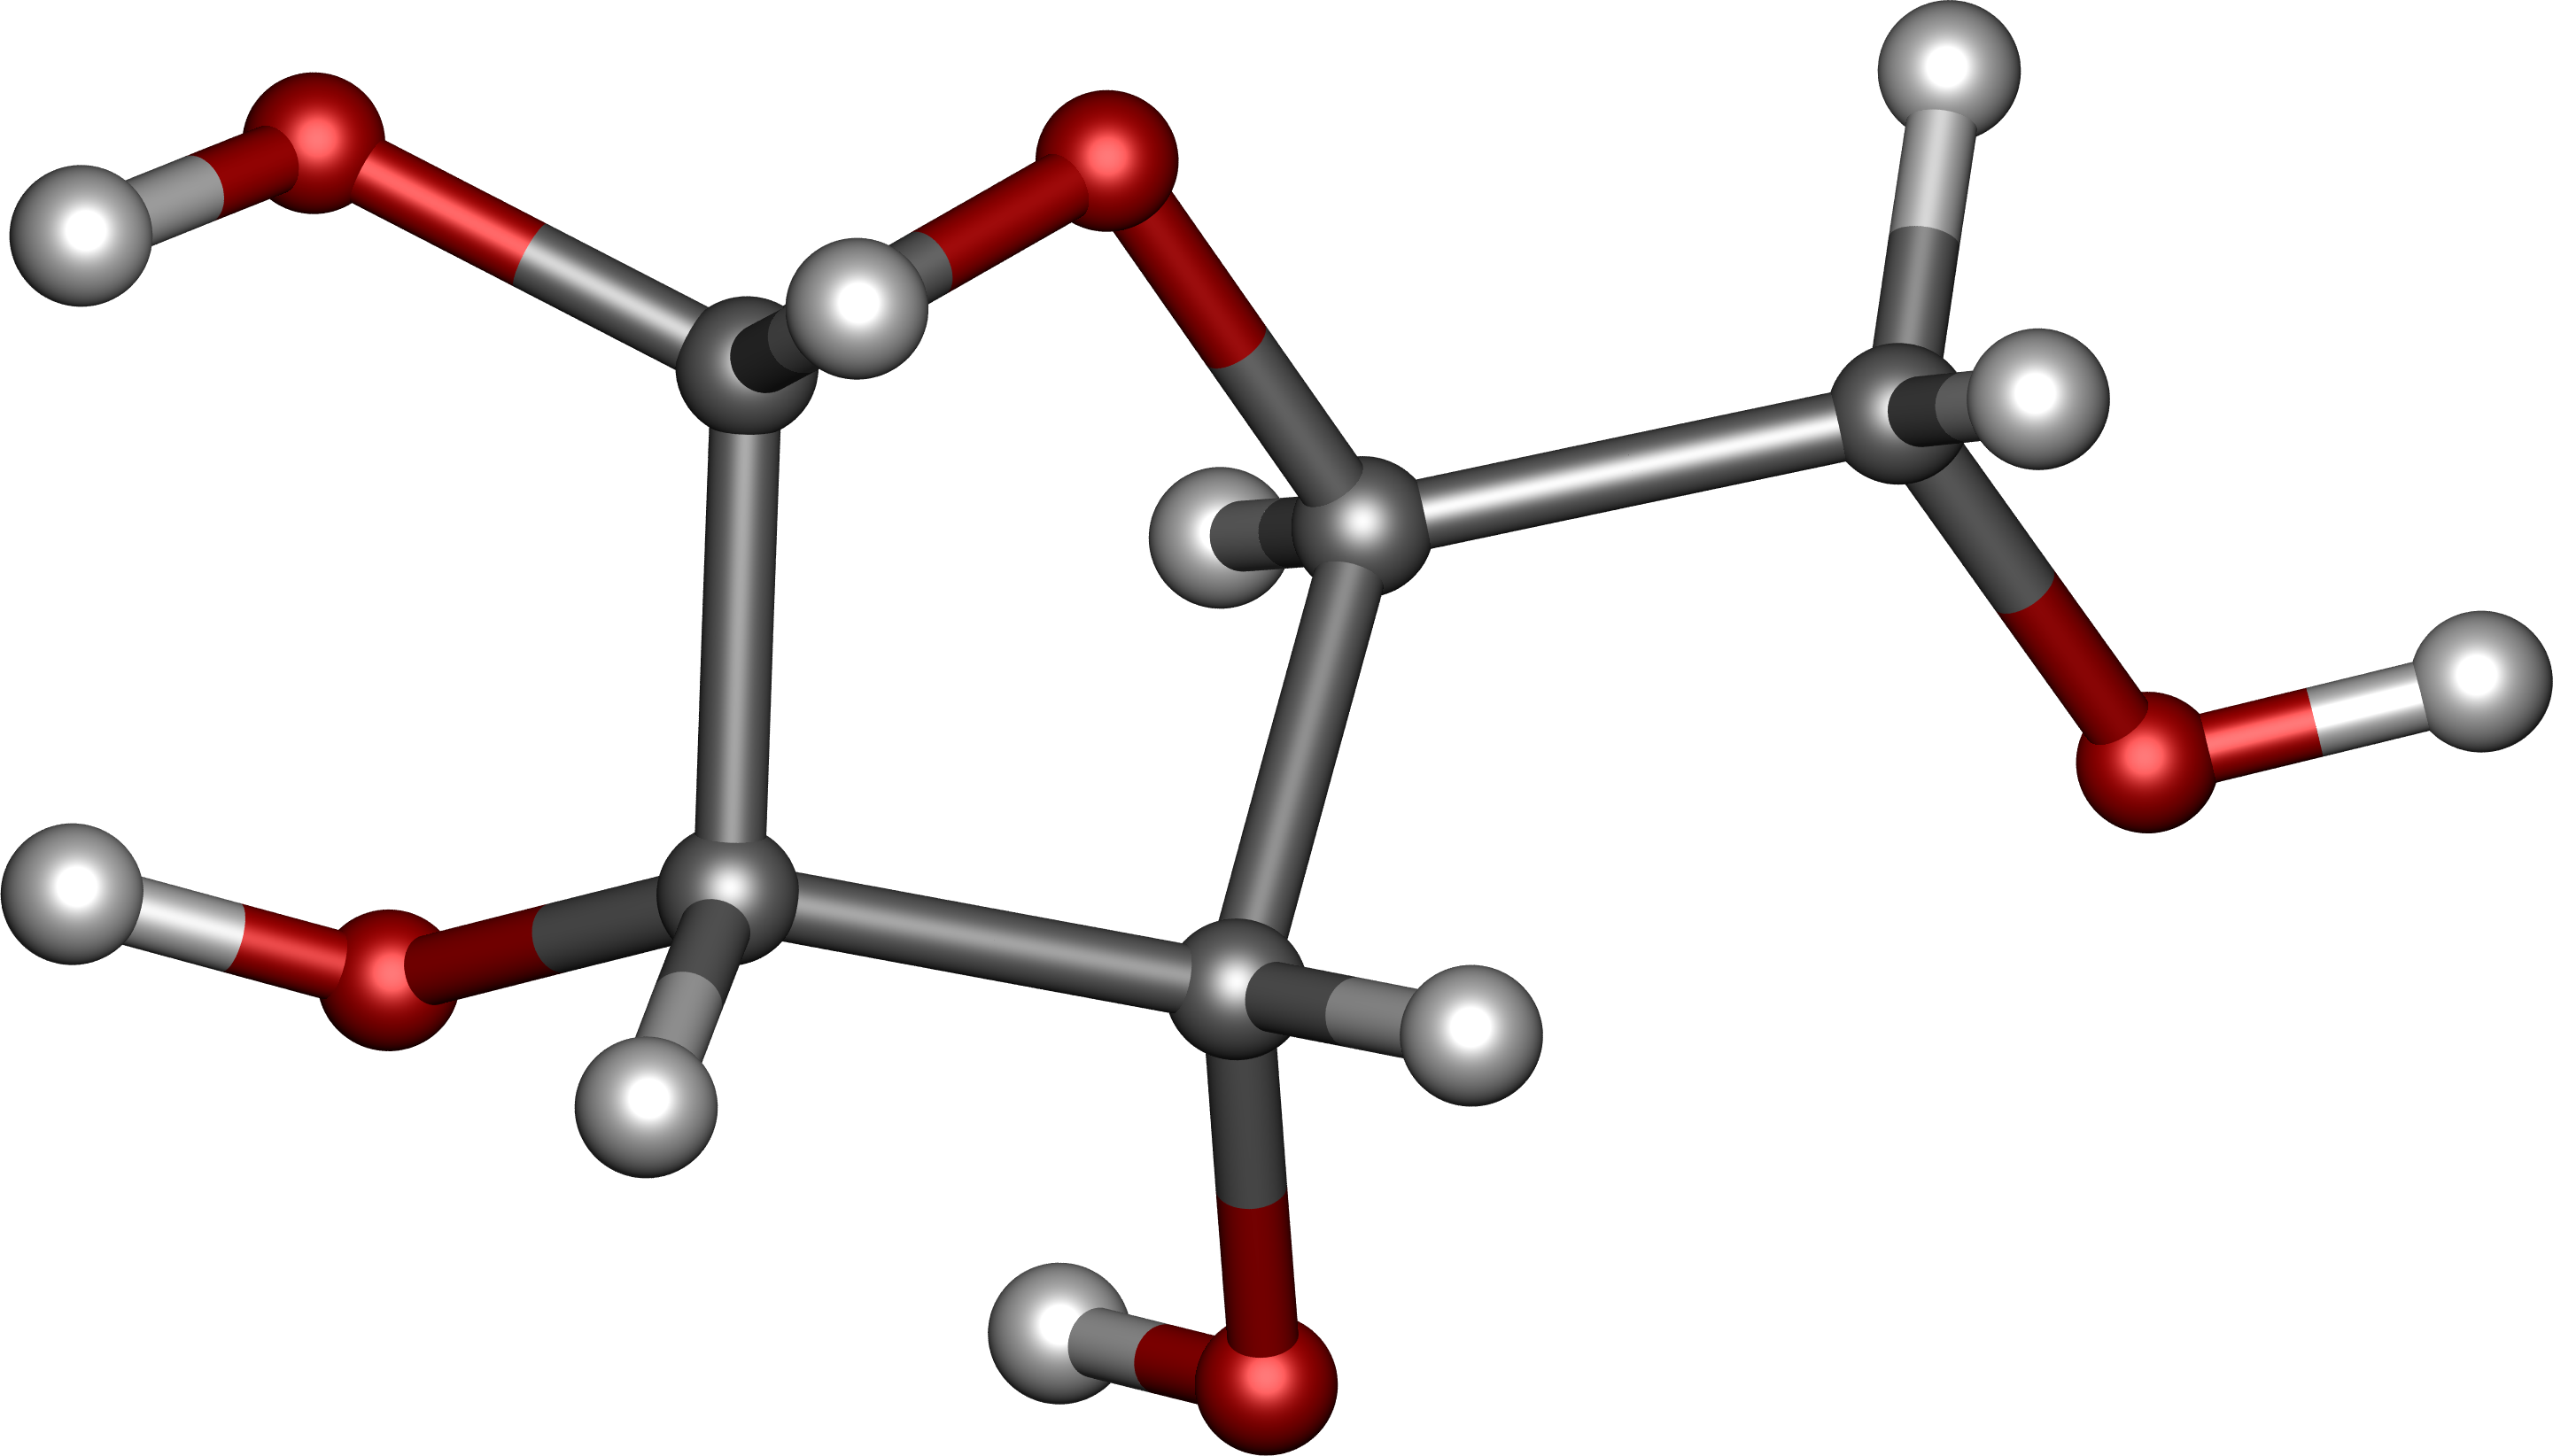 Рибоза трехмерная молекула. Альфа рибоза. Молекула углевода. Объёмная модель молекул из металла.